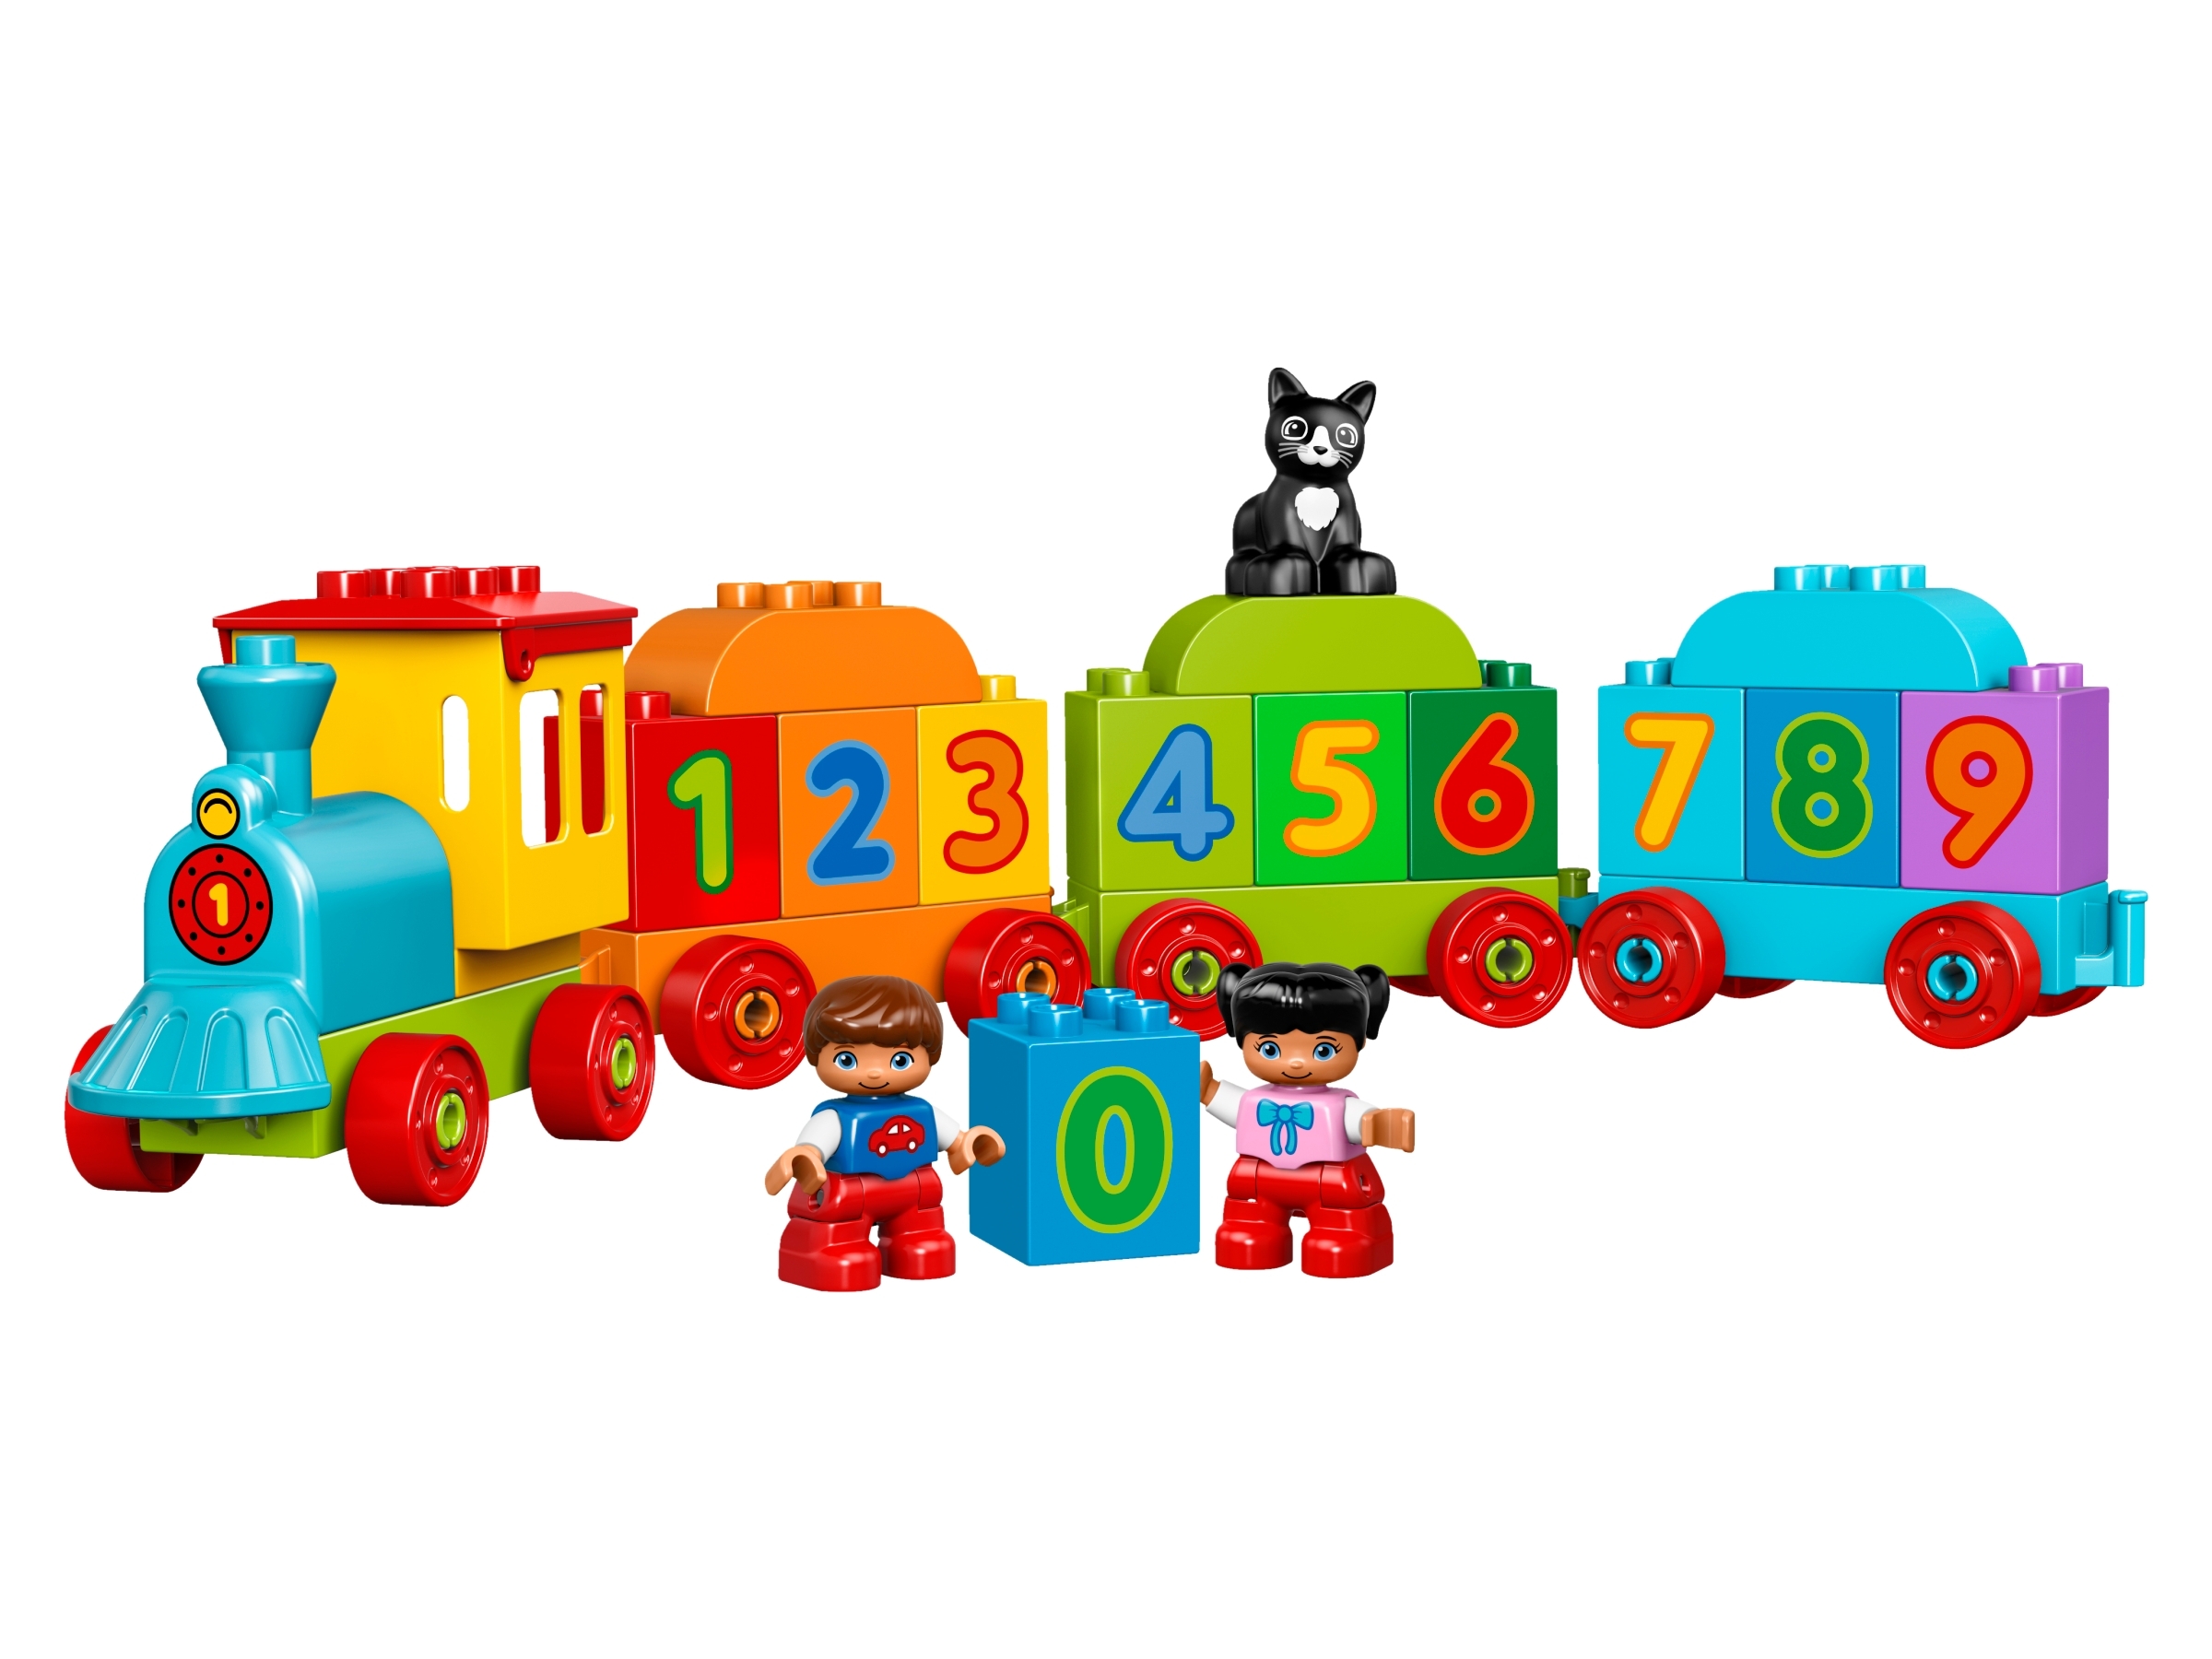 LEGO 10847 Duplo Le Train des Chiffres Jeu De Construction Éducatif avec Briq... 